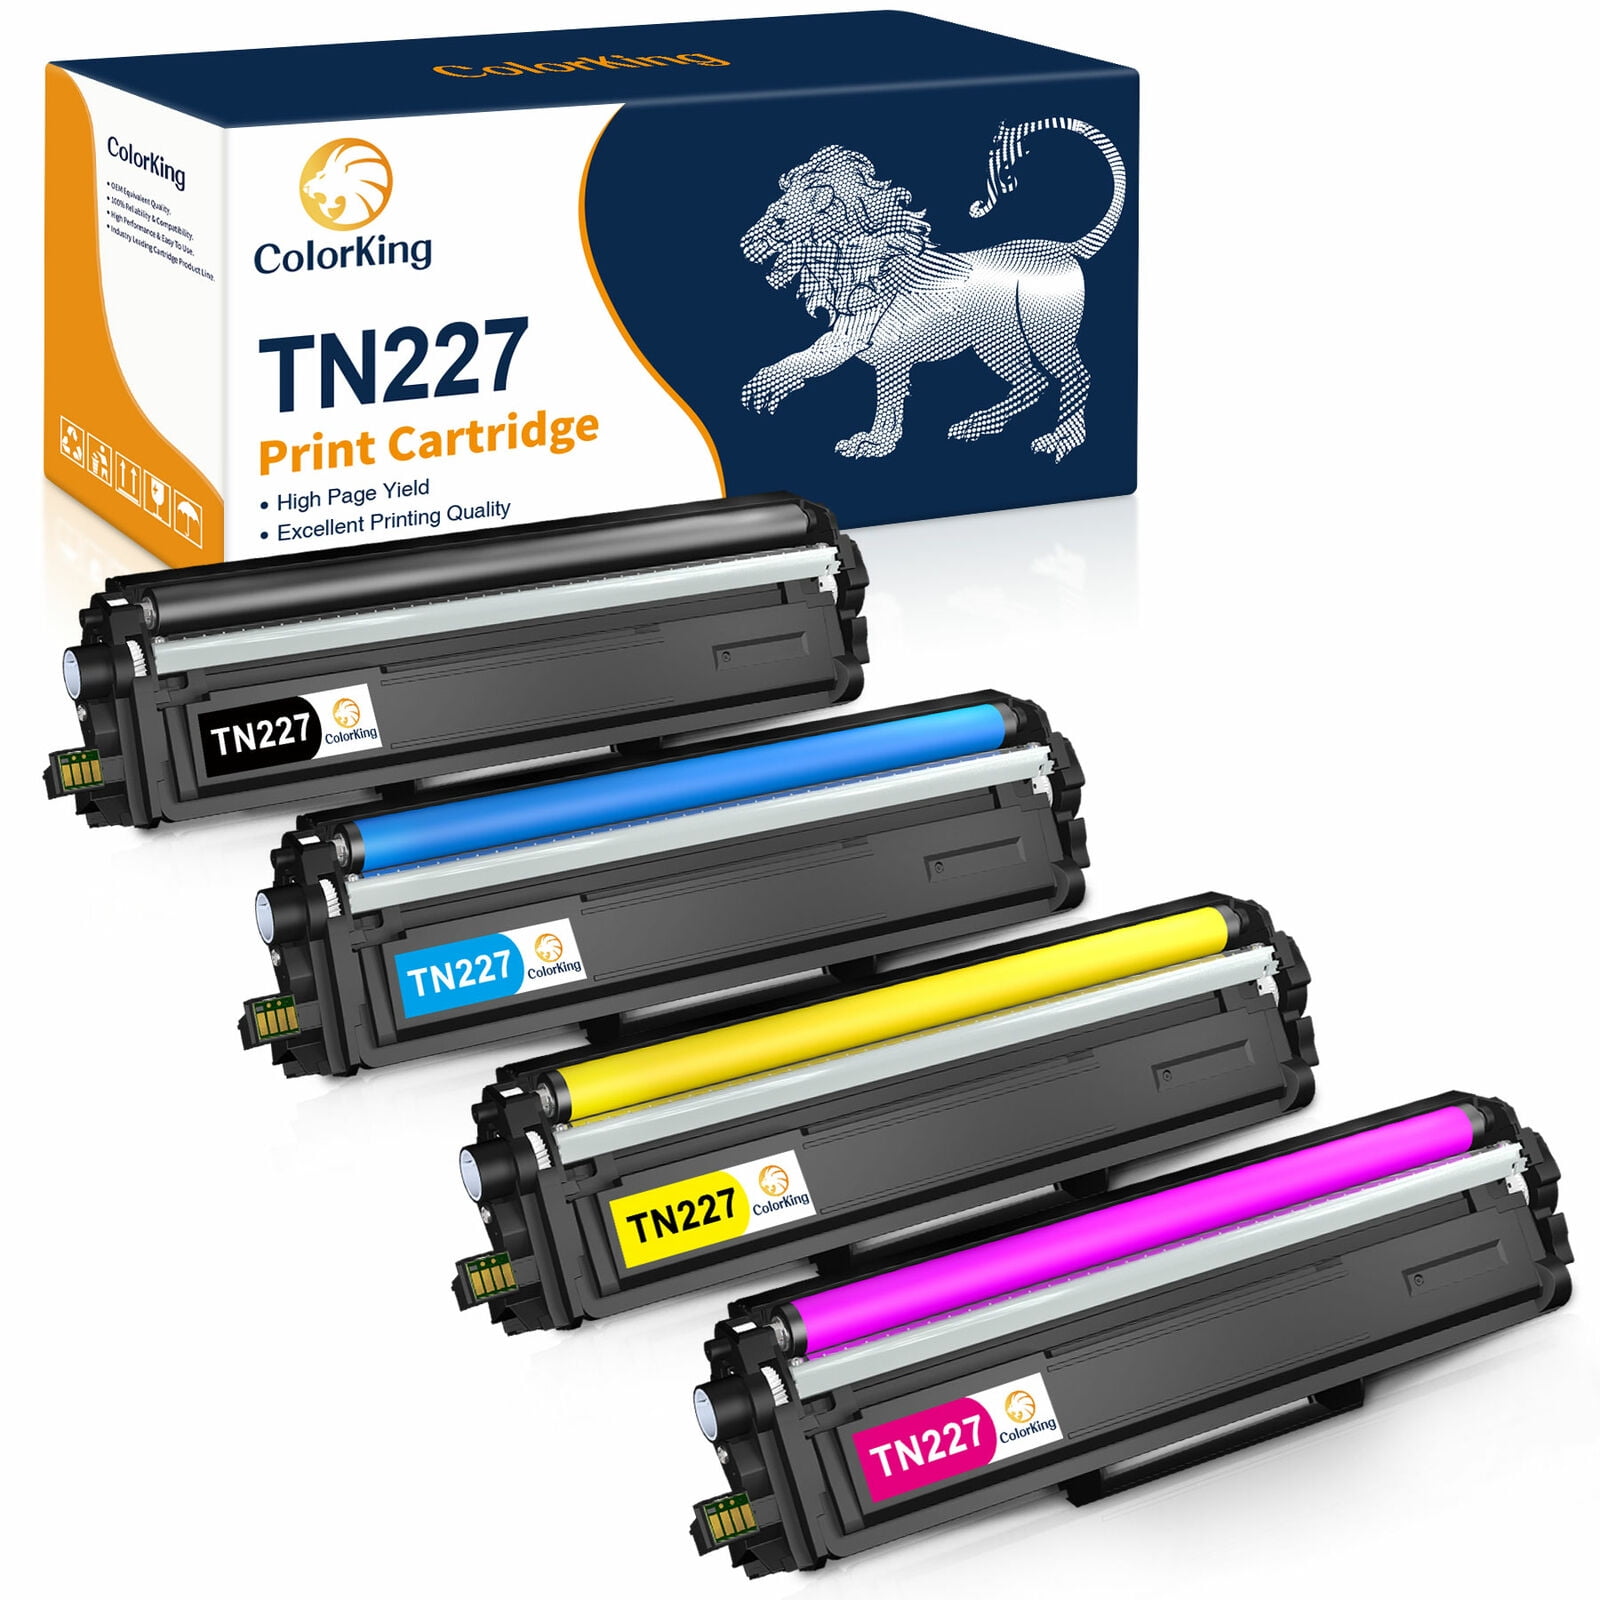 Pub ekstremister Rosefarve ColorKing Toner Cartridge Replacement for Brother TN227 TN227BK TN-227  TN223 TN223BK for MFC-L3750CDW HL-L3210CW HL-L3290CD HL-L3230CDW  HL-L3270CDW MFC-L3710CW MFC-L3770CDW Printer (4 Pack) - Walmart.com